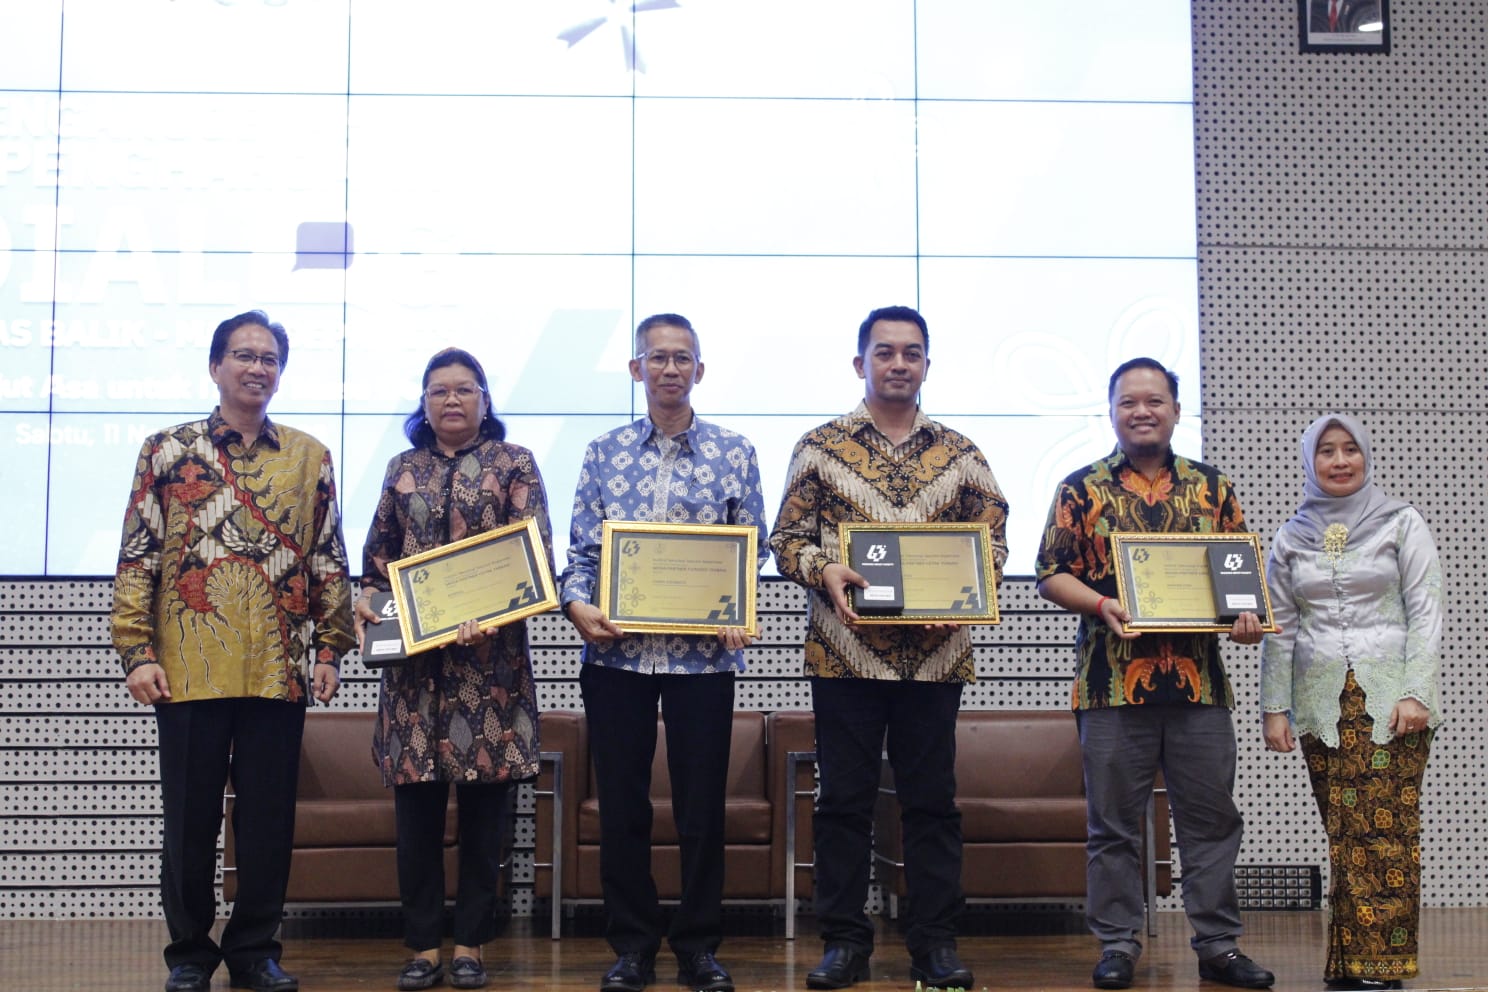 Penyerahan penghargaan kepada Media Partner ITS antara lain LKBN Antara, Harian Jawa Pos, Suara Surabaya, dan Harian Kompas oleh Rektor ITS Prof Dr Ir Mochamad Ashari MEng